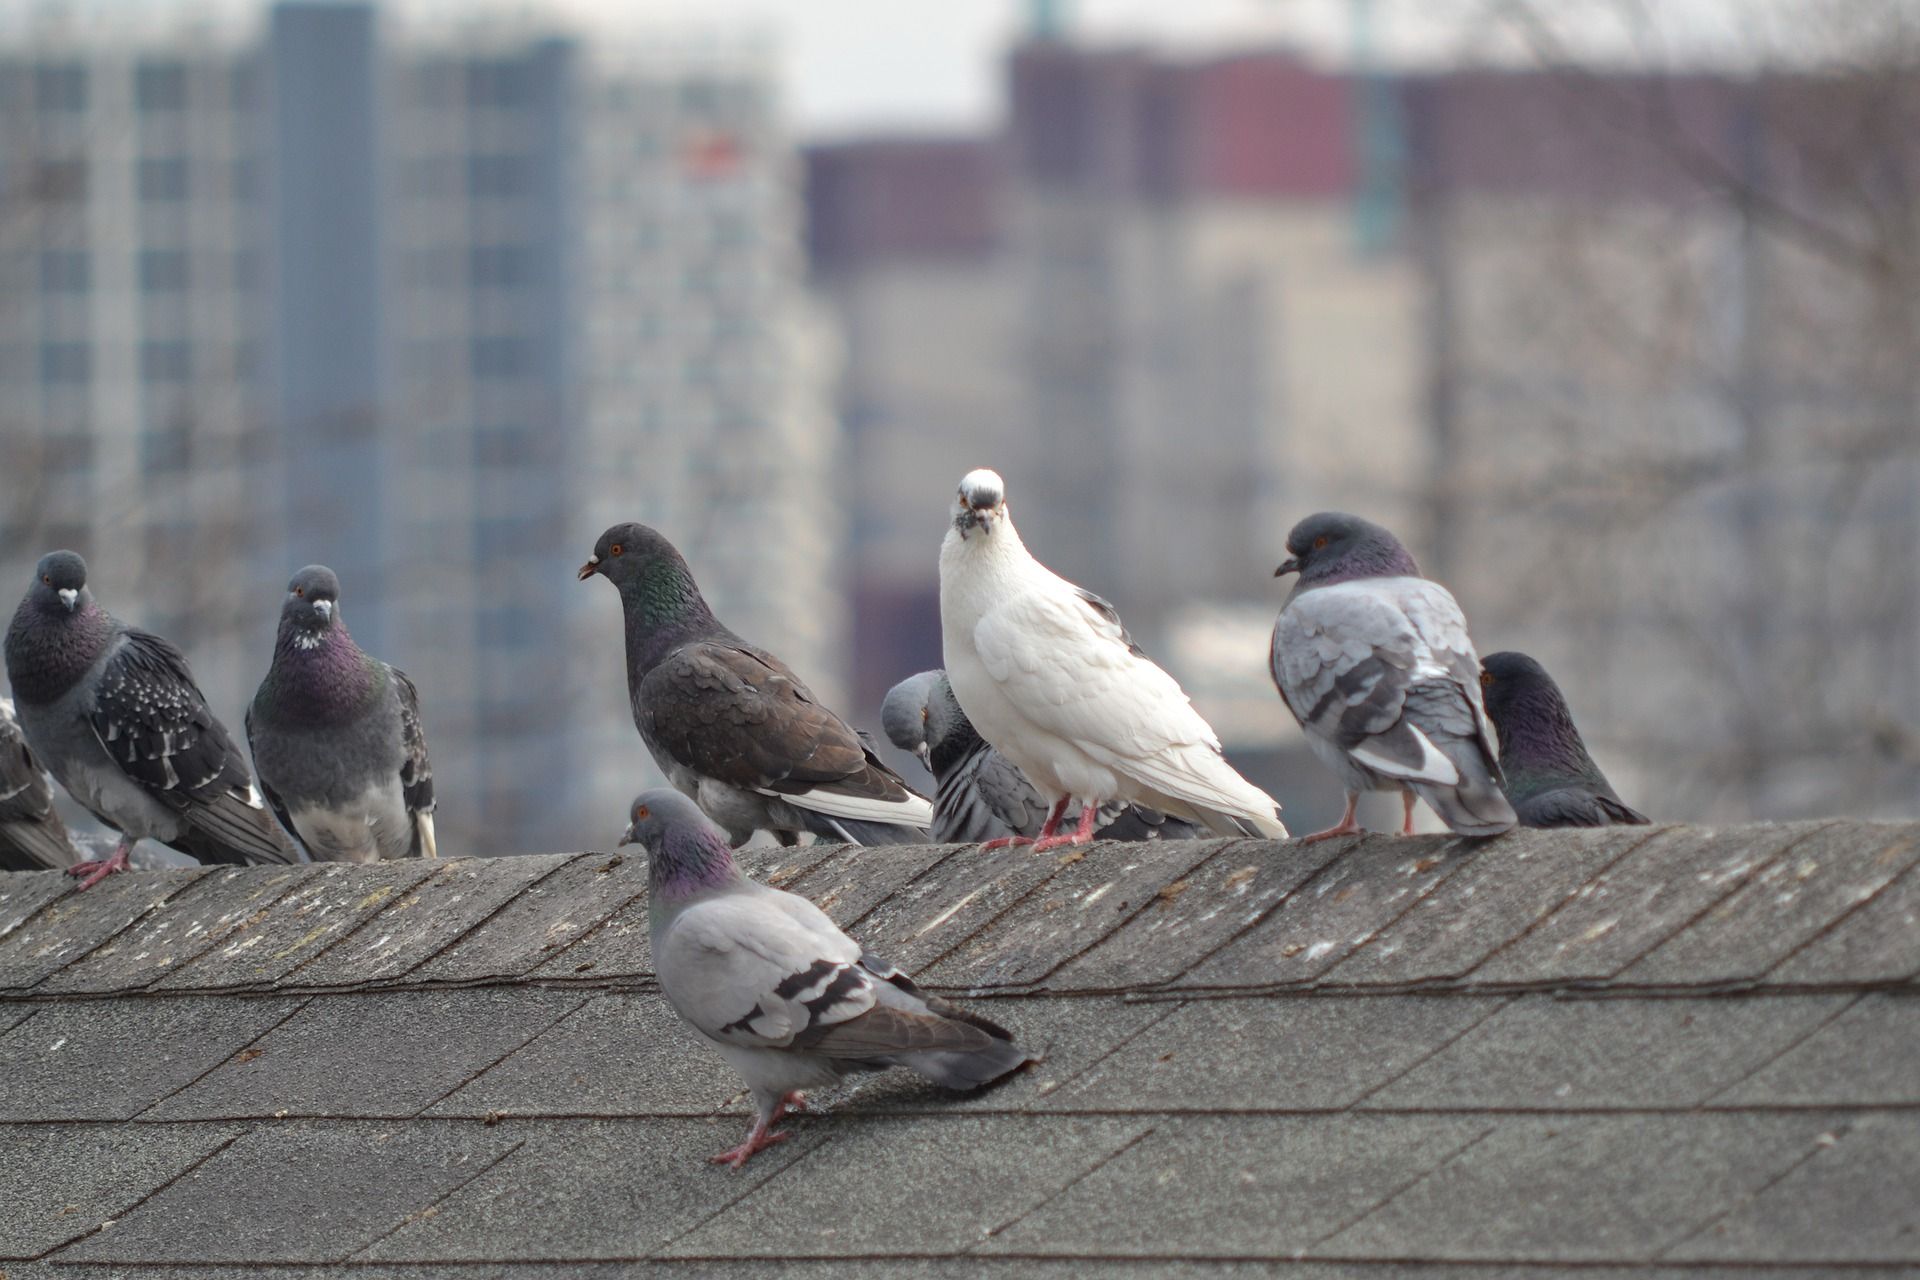 Les astuces pour faire fuir les pigeons naturellement